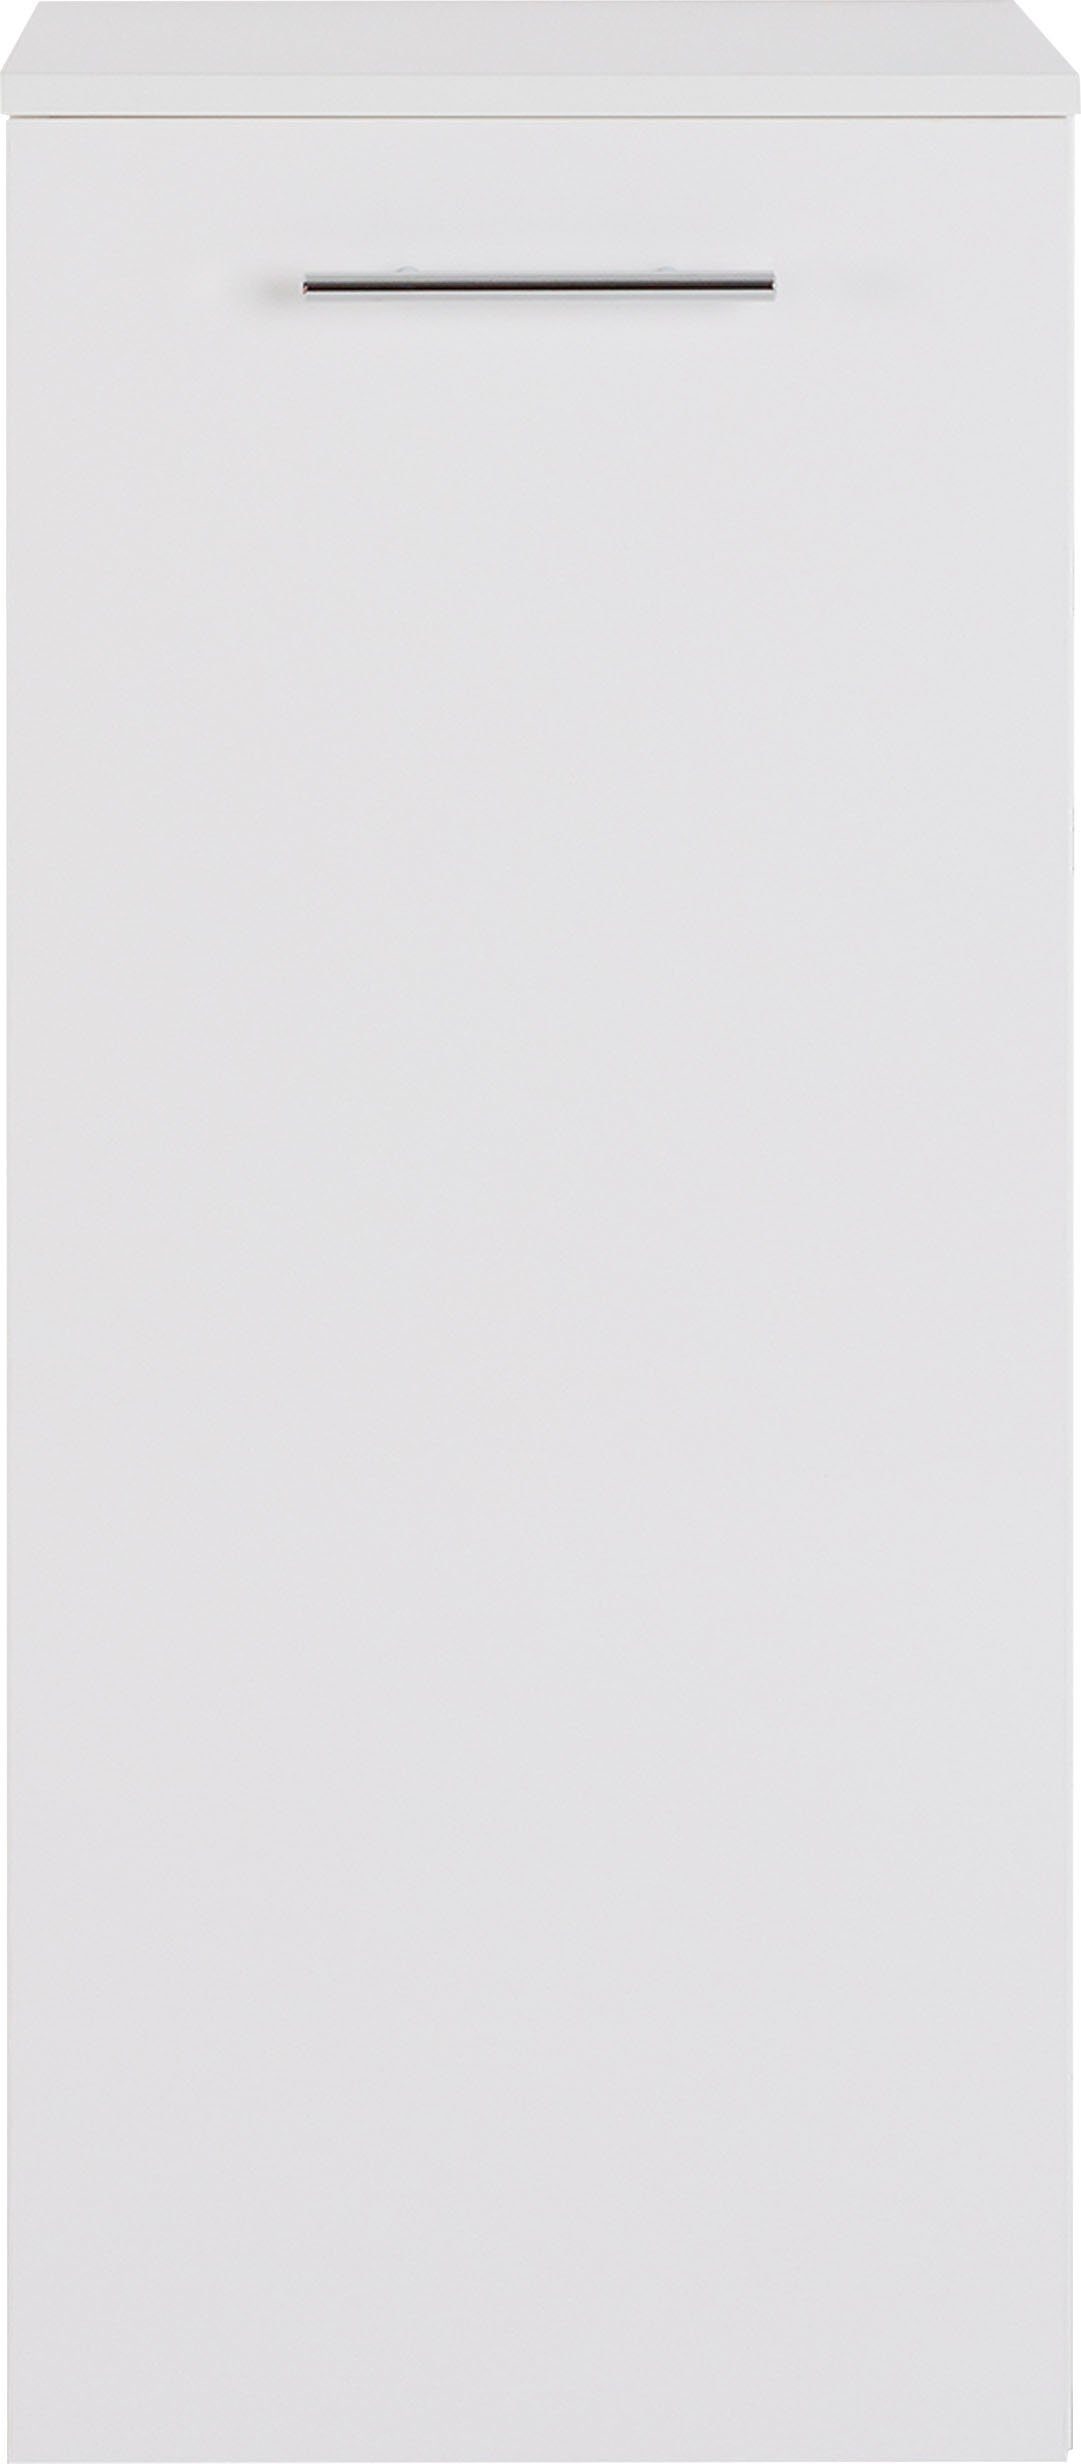 Breite Midischrank cm | 3040, weiß weiß 40 MARLIN